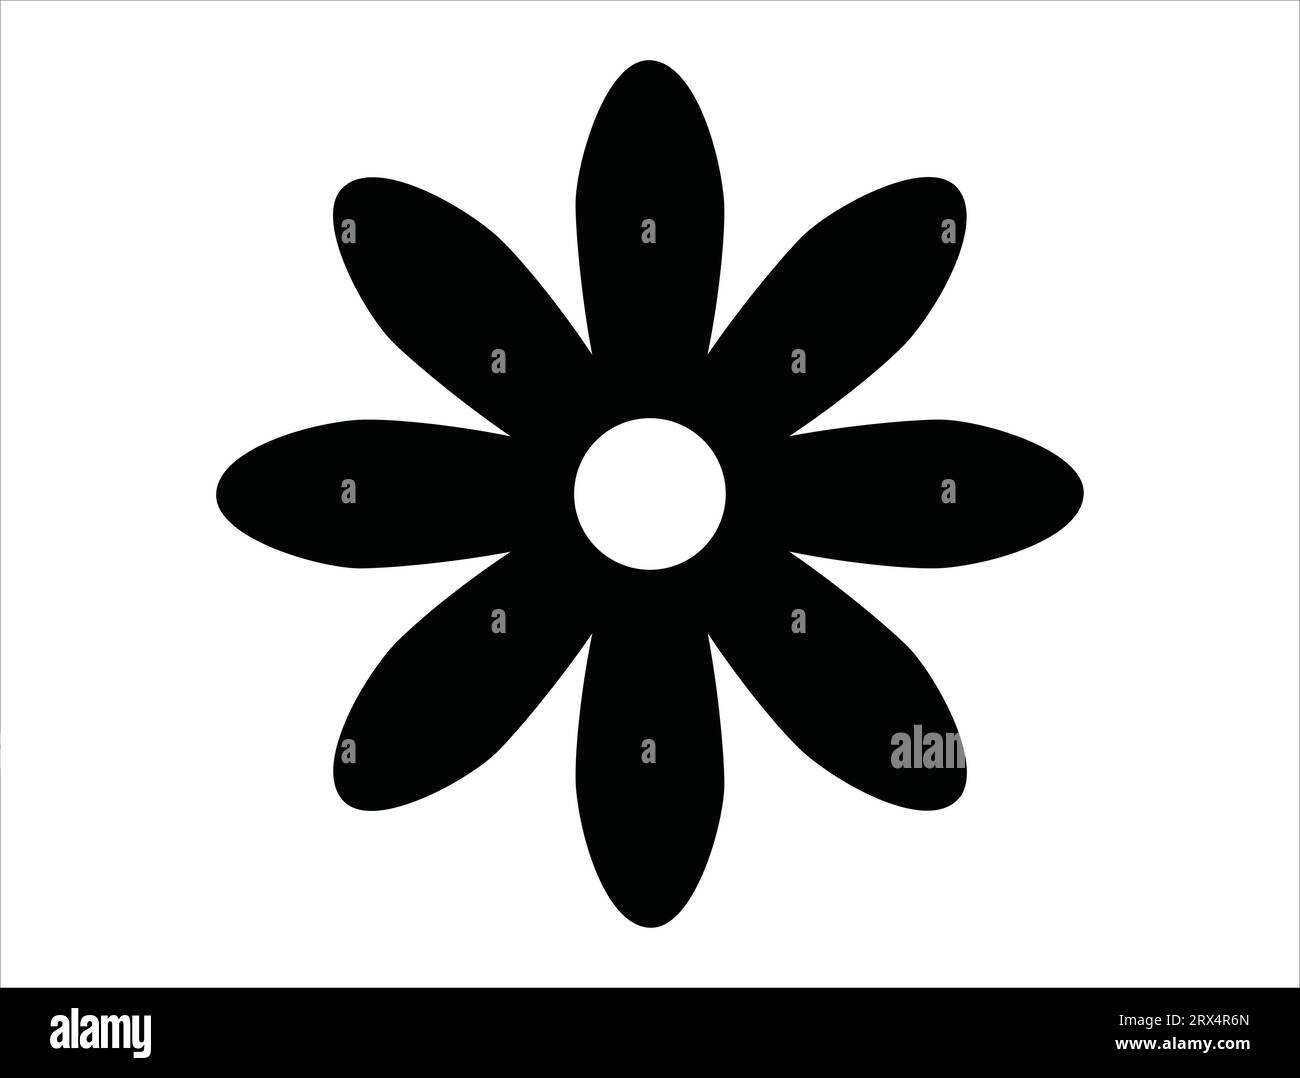 Daisy flower silhouette vector art white background Stock Vector